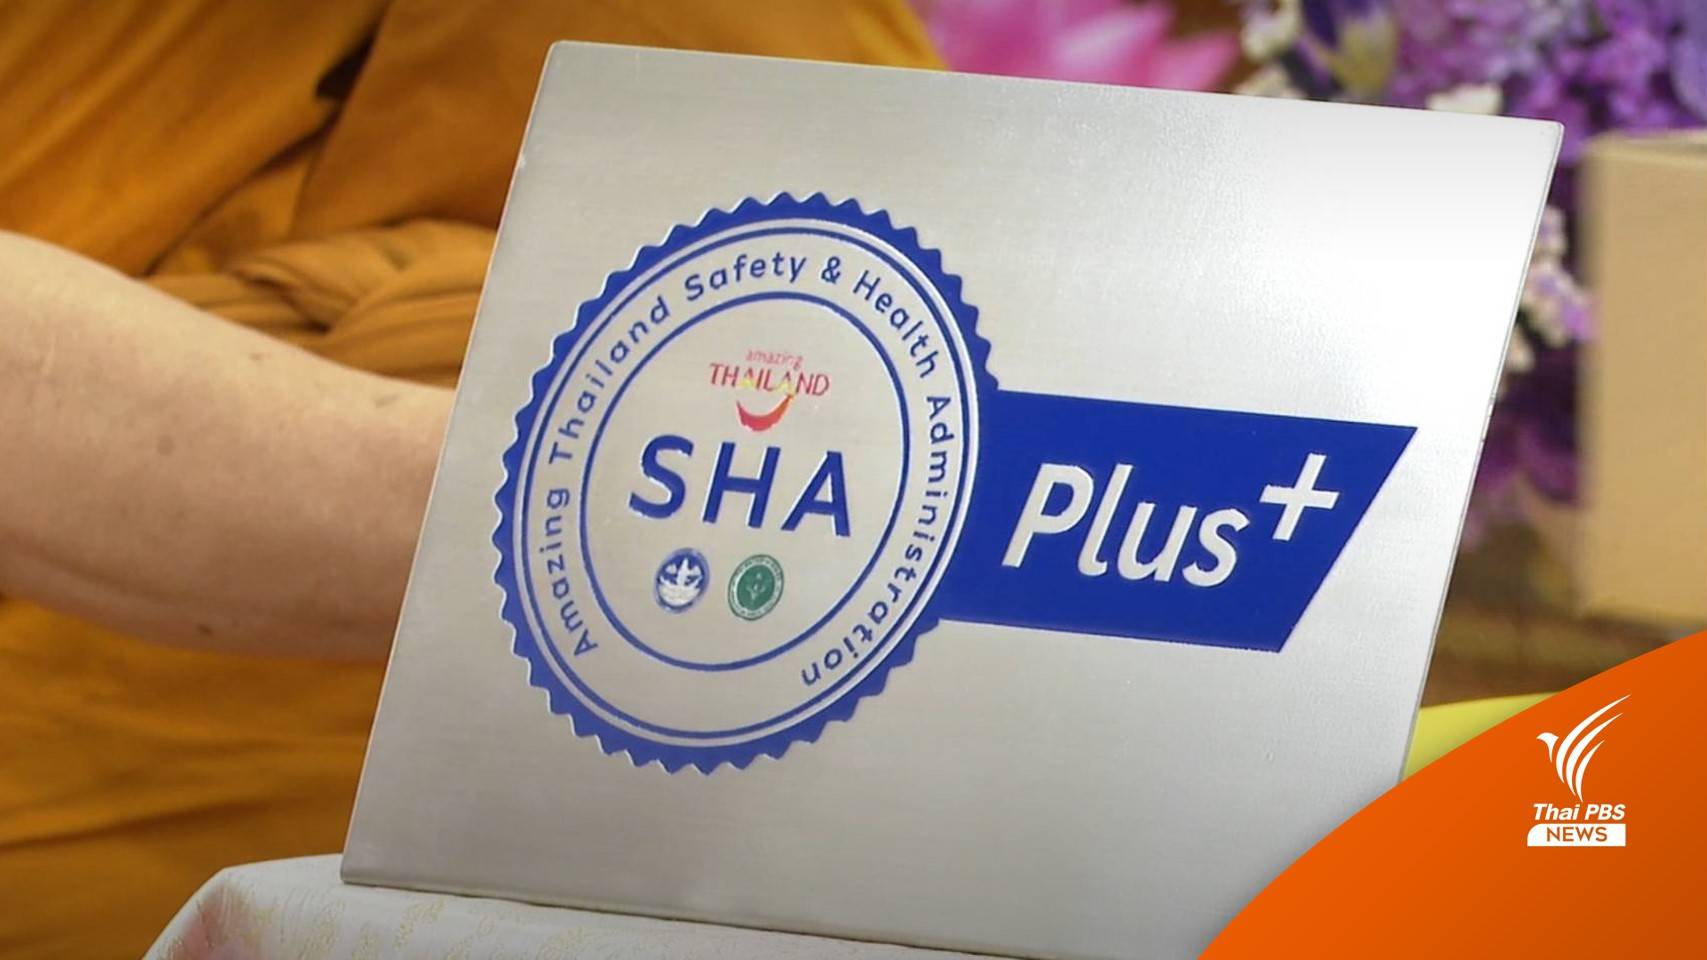 อะไรคือ "SHA - SHA Plus" เที่ยวไทยมั่นใจมากขึ้น